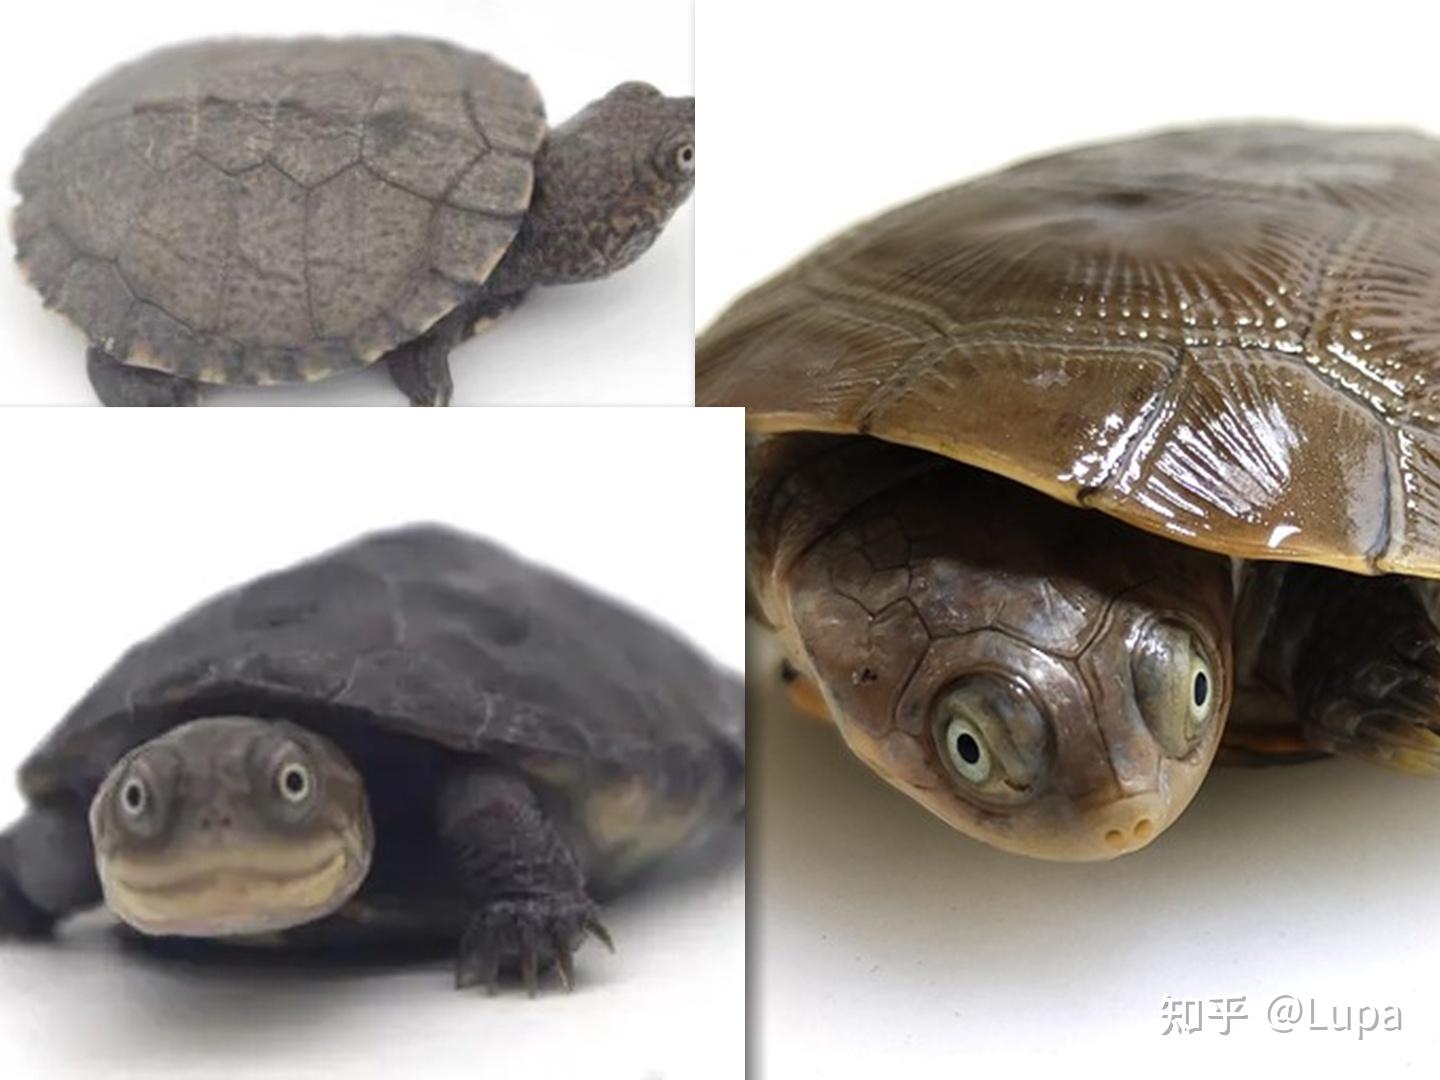 黑颈乌龟、广东草龟、黑颈草龟 - 养龟吧